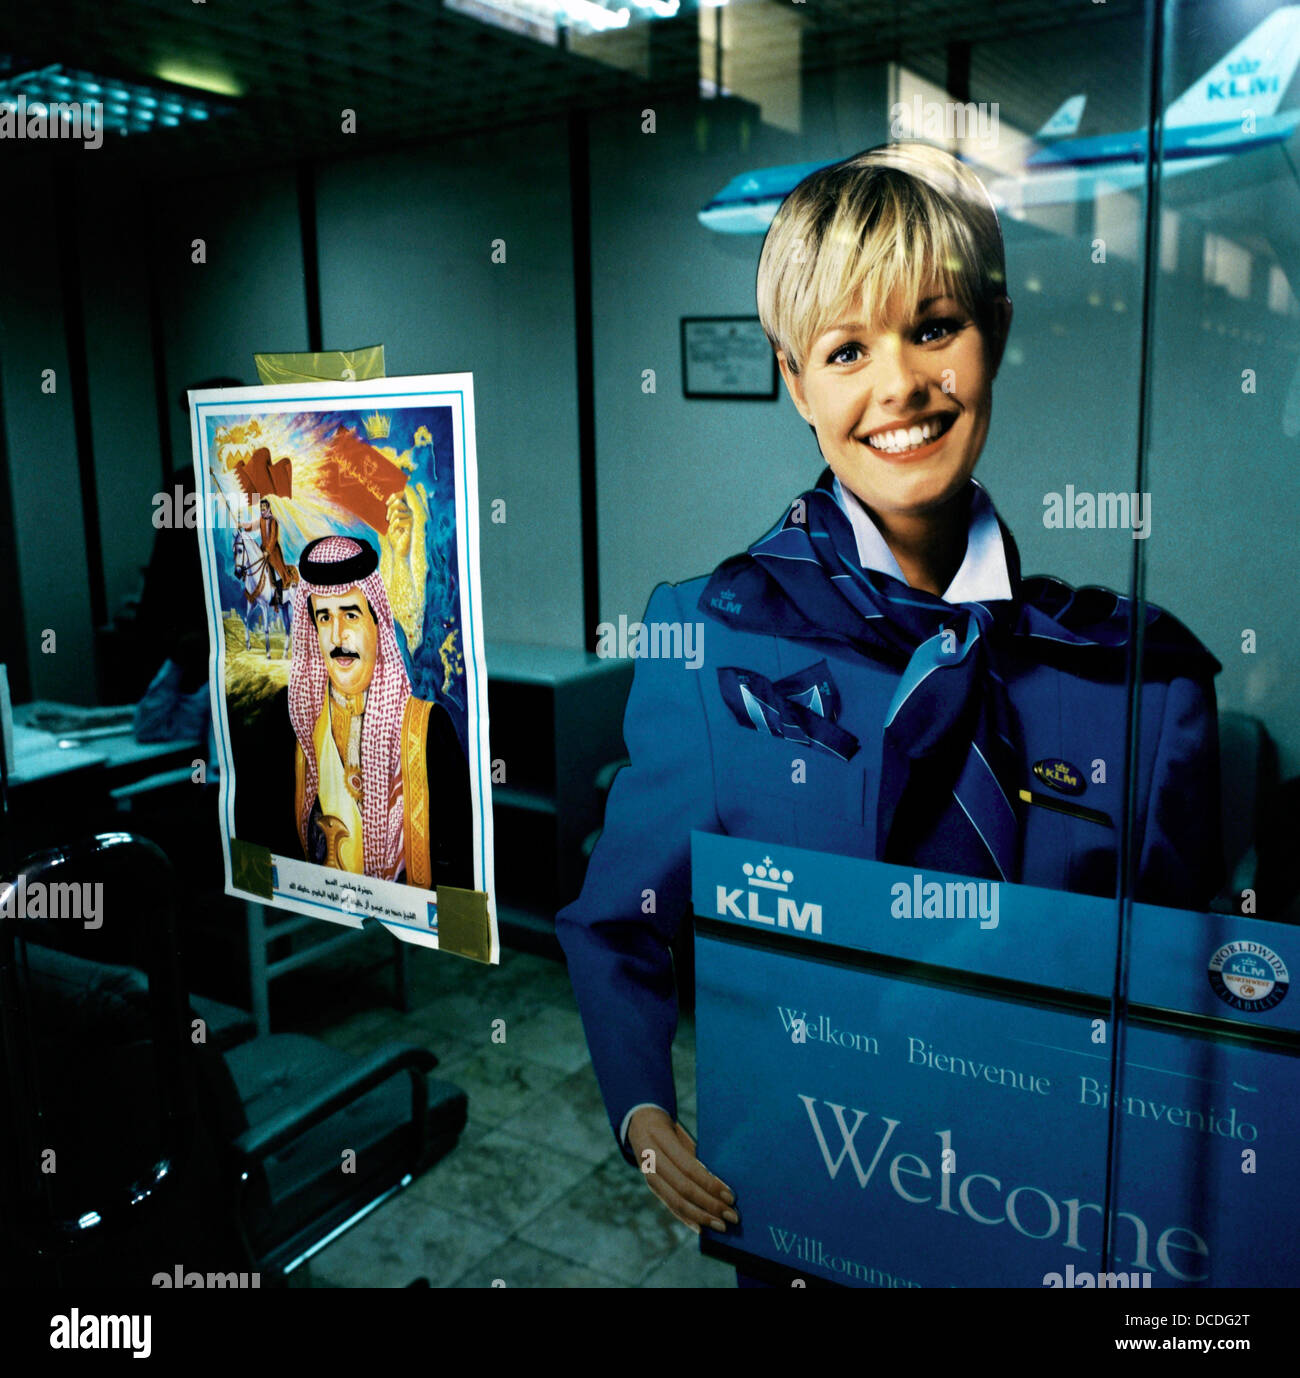 Ufficiale accanto al ritratto di una reale Bahraini stati, il volto sorridente di una bionda olandese della compagnia aerea KLM ragazza adorna di un poster in compagnia dell'ufficio in aeroporto Bahrain Foto Stock